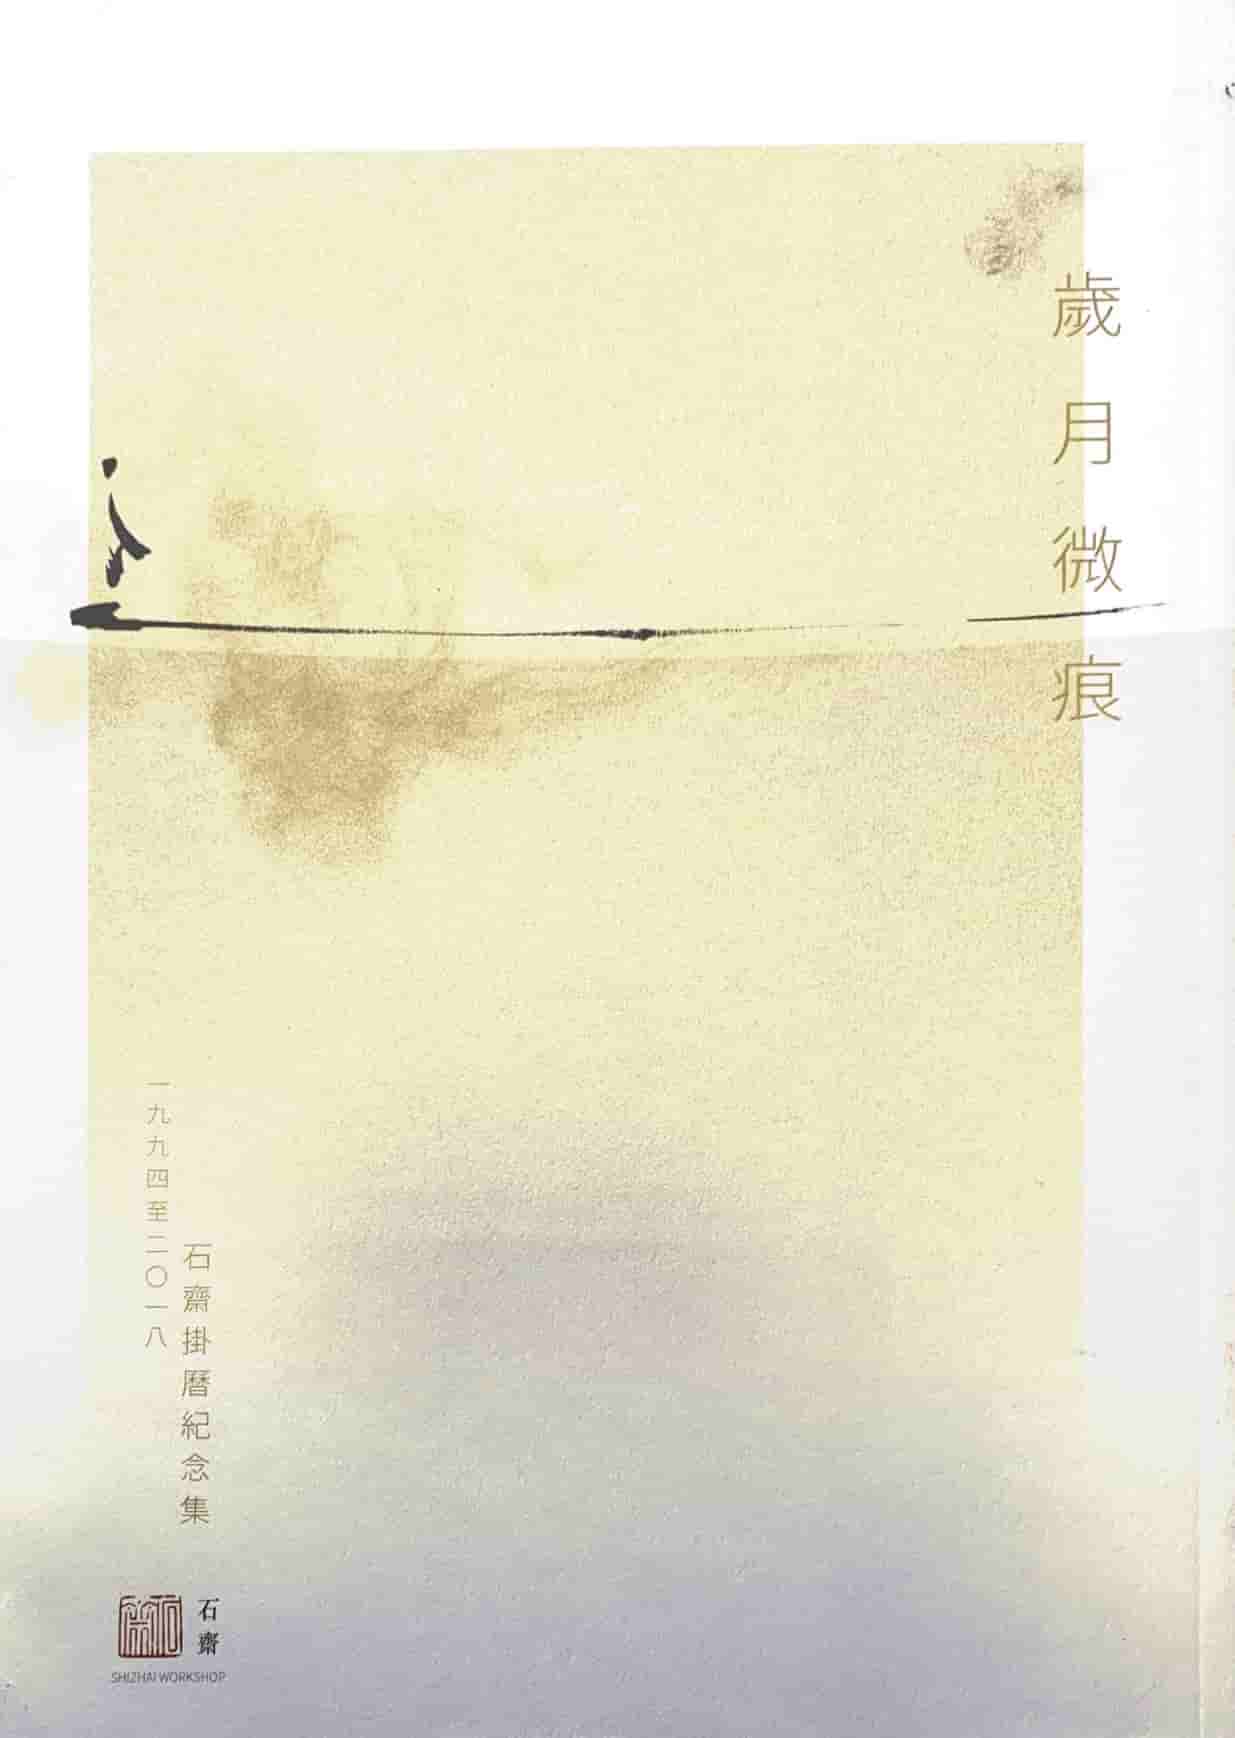 Cover of 歲月微痕